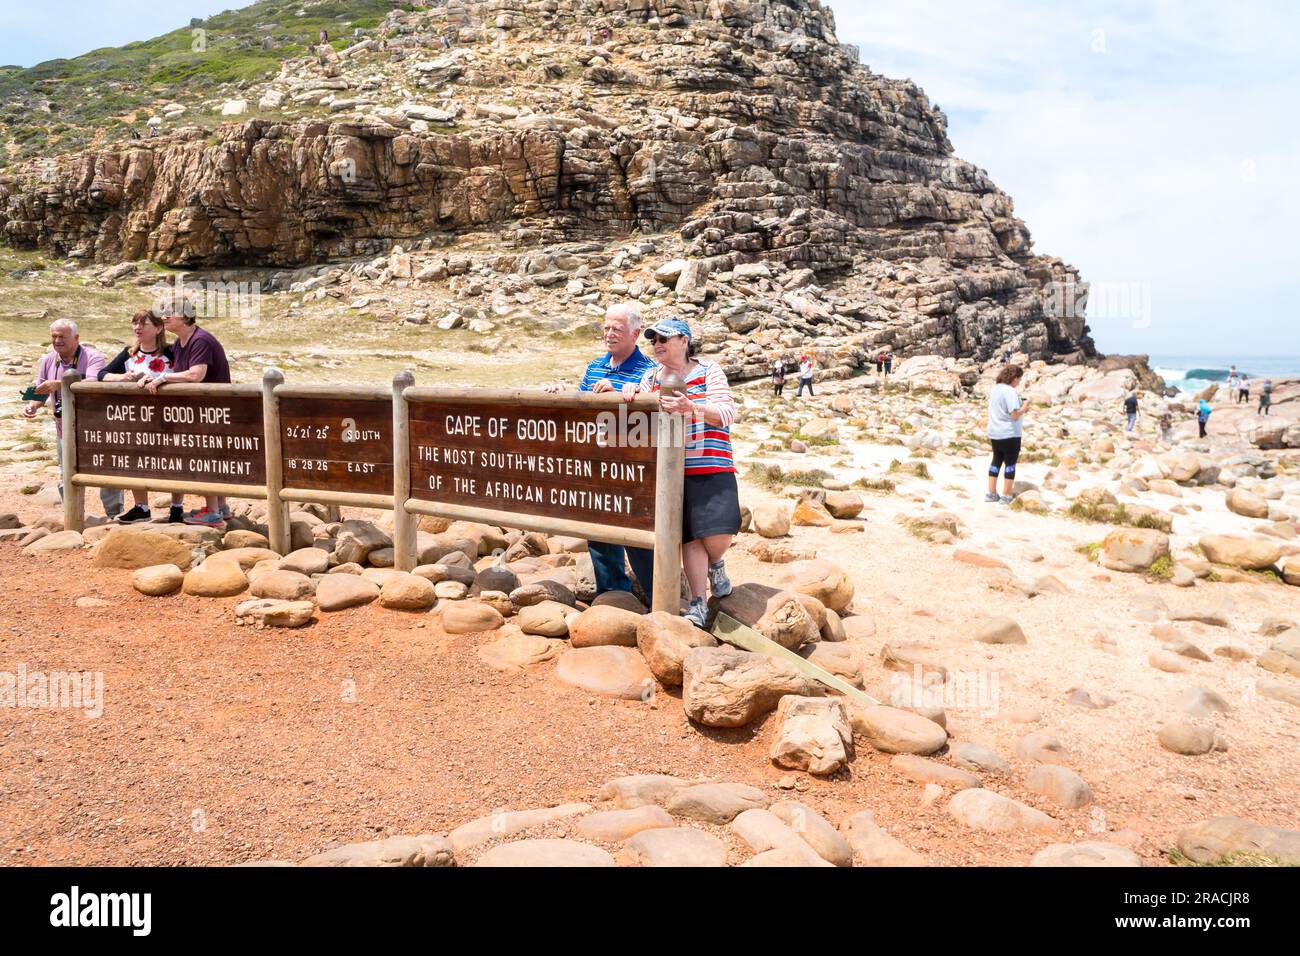 Schild oder Beschilderung zum Kap der Guten Hoffnung mit Touristen, Menschen, die Fotos als Andenken, Souvenirs, Erinnerungen an der südwestlichen Spitze des afrikanischen Kontinents machen lassen Stockfoto